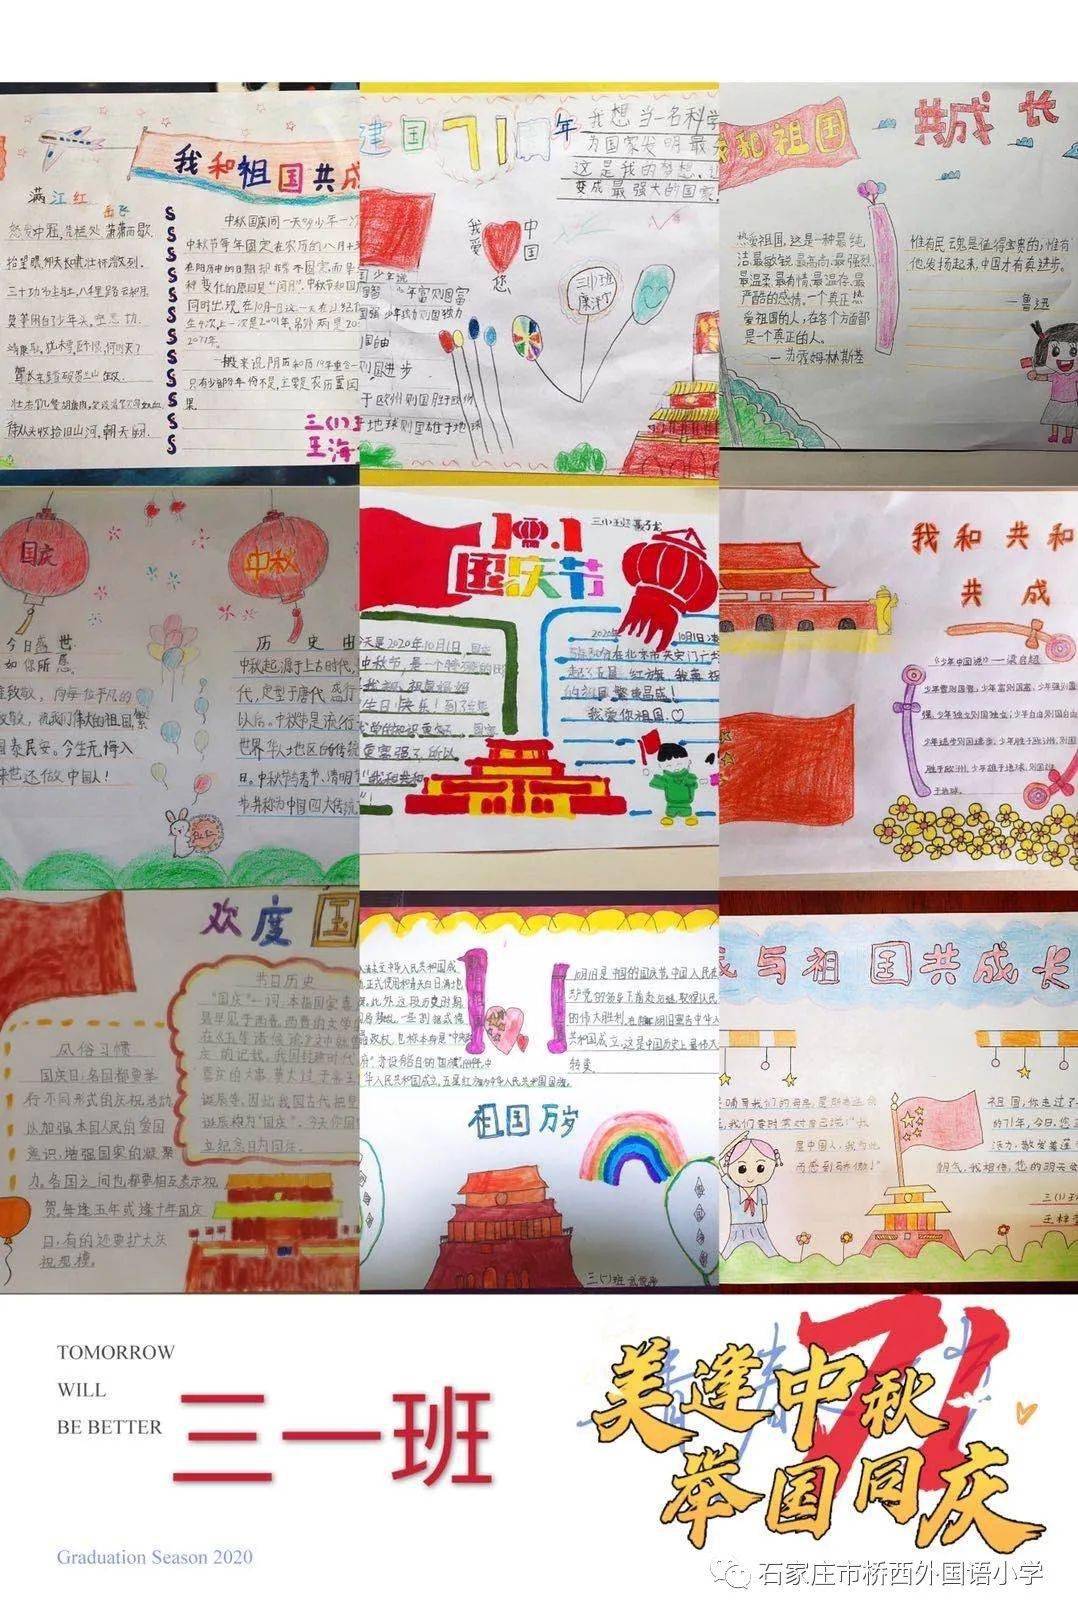 桥西外国语小学|"庆祝新中国成立71周年 五星红旗飘起来"——三年级